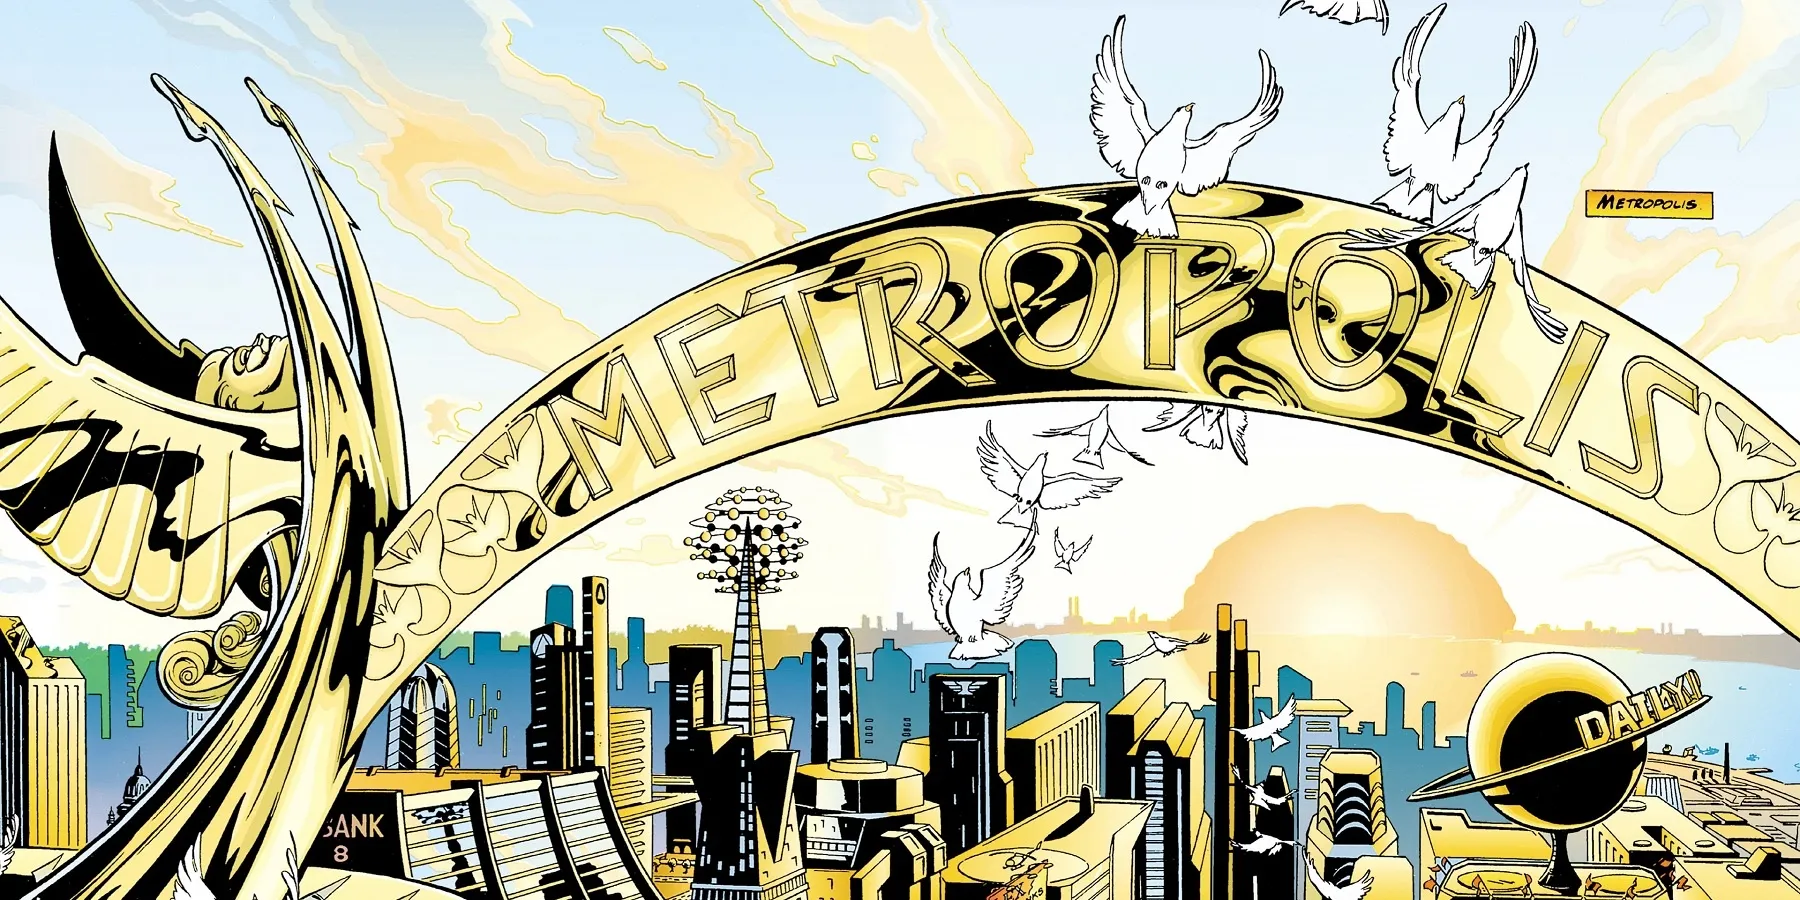 DC Migliori Città- Metropolis